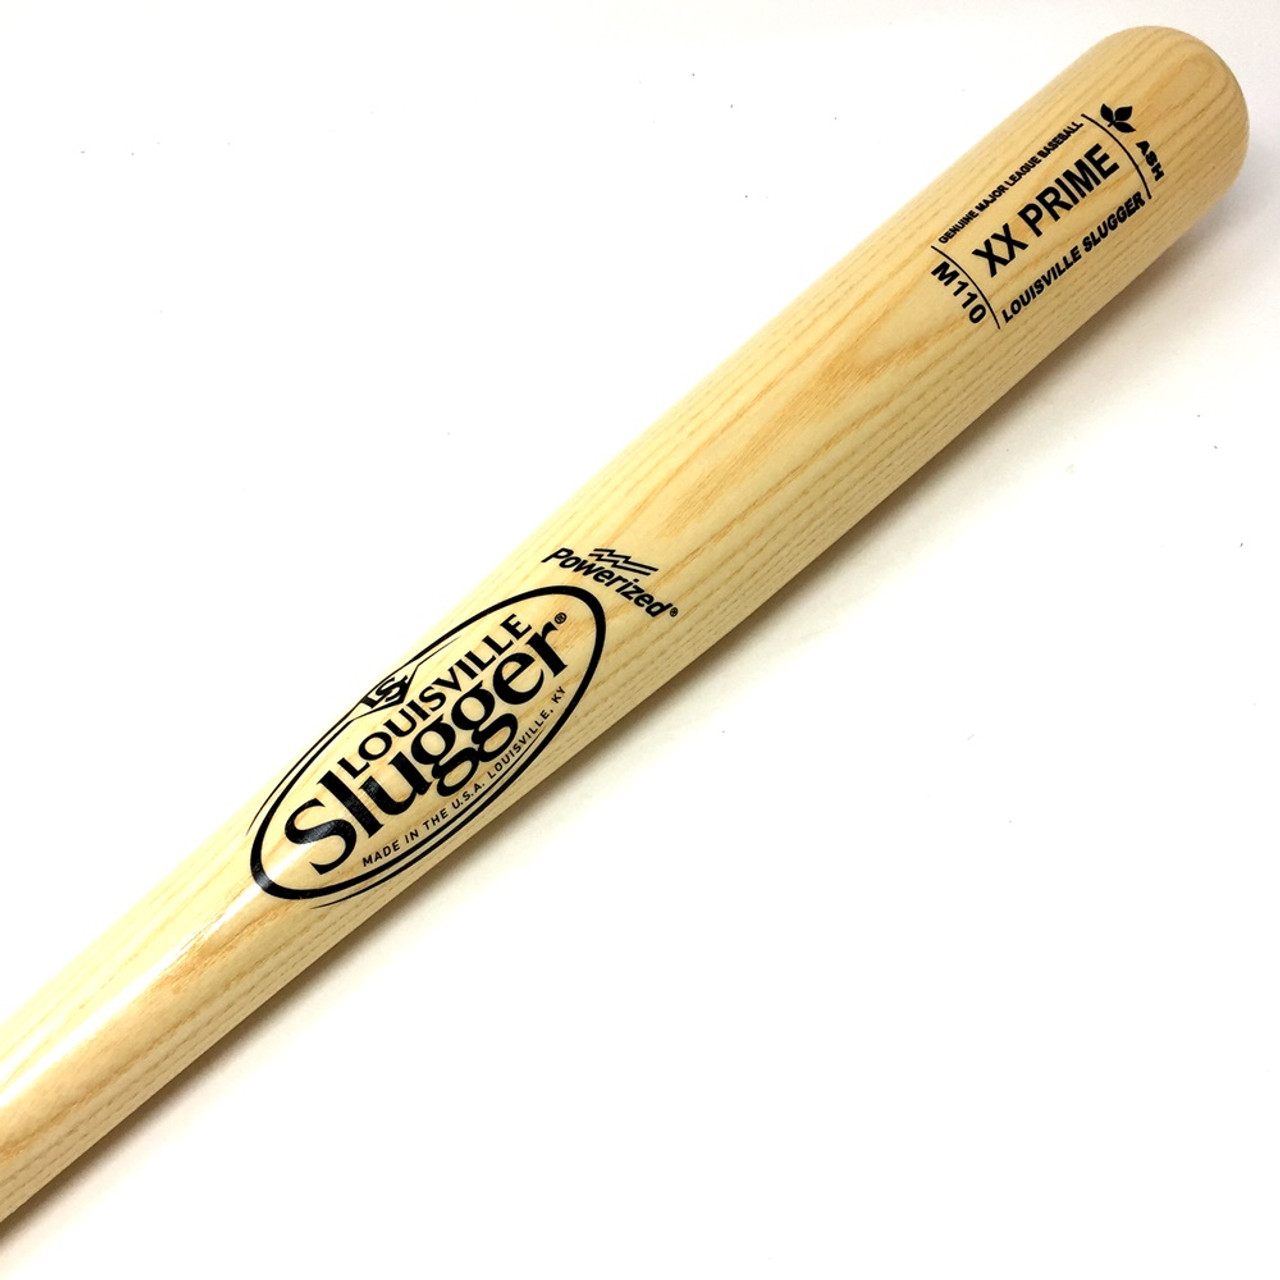 Classic Louisville Slugger Little League wooden baseball bat